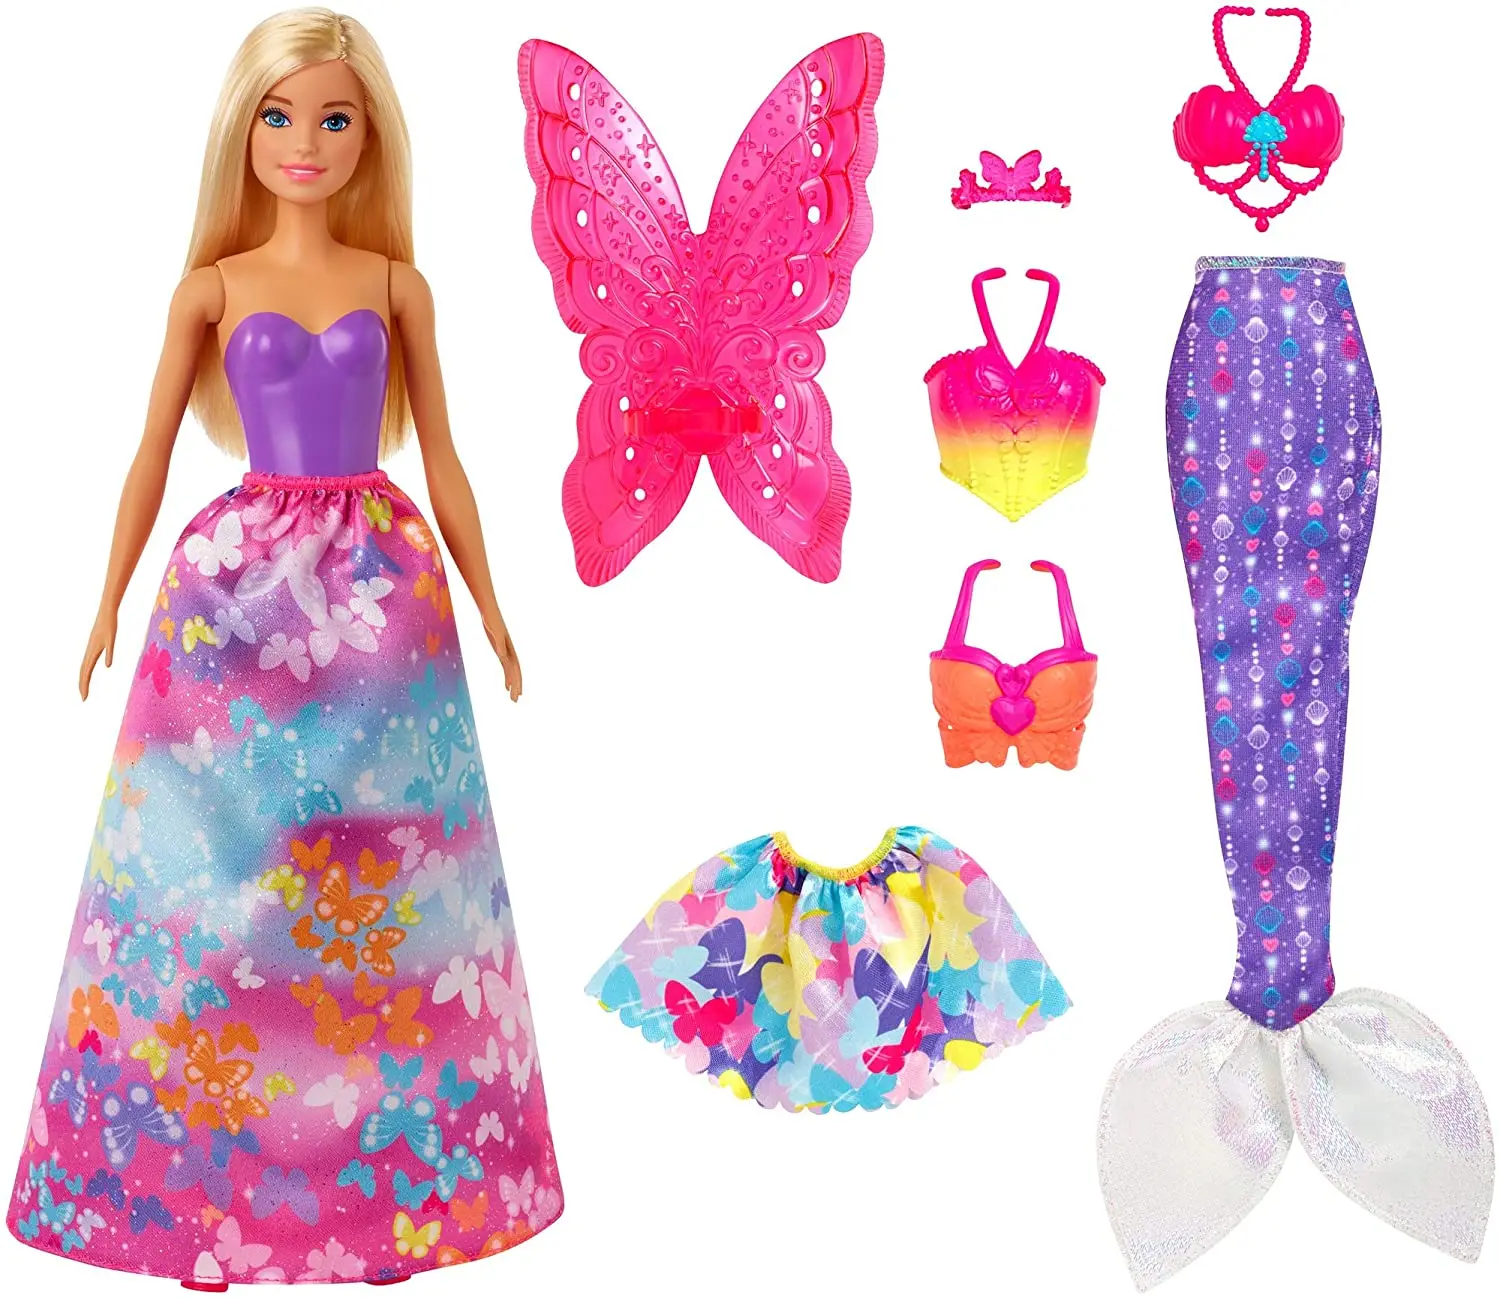 Originálne Bábiky Barbie Dreamtopia Bábiky, Hračky pre Dievčatá Morská víla Barbie Oblečenie Dlho Bábika Vlasy Detská Hračka pre Deti, Darček k Narodeninám